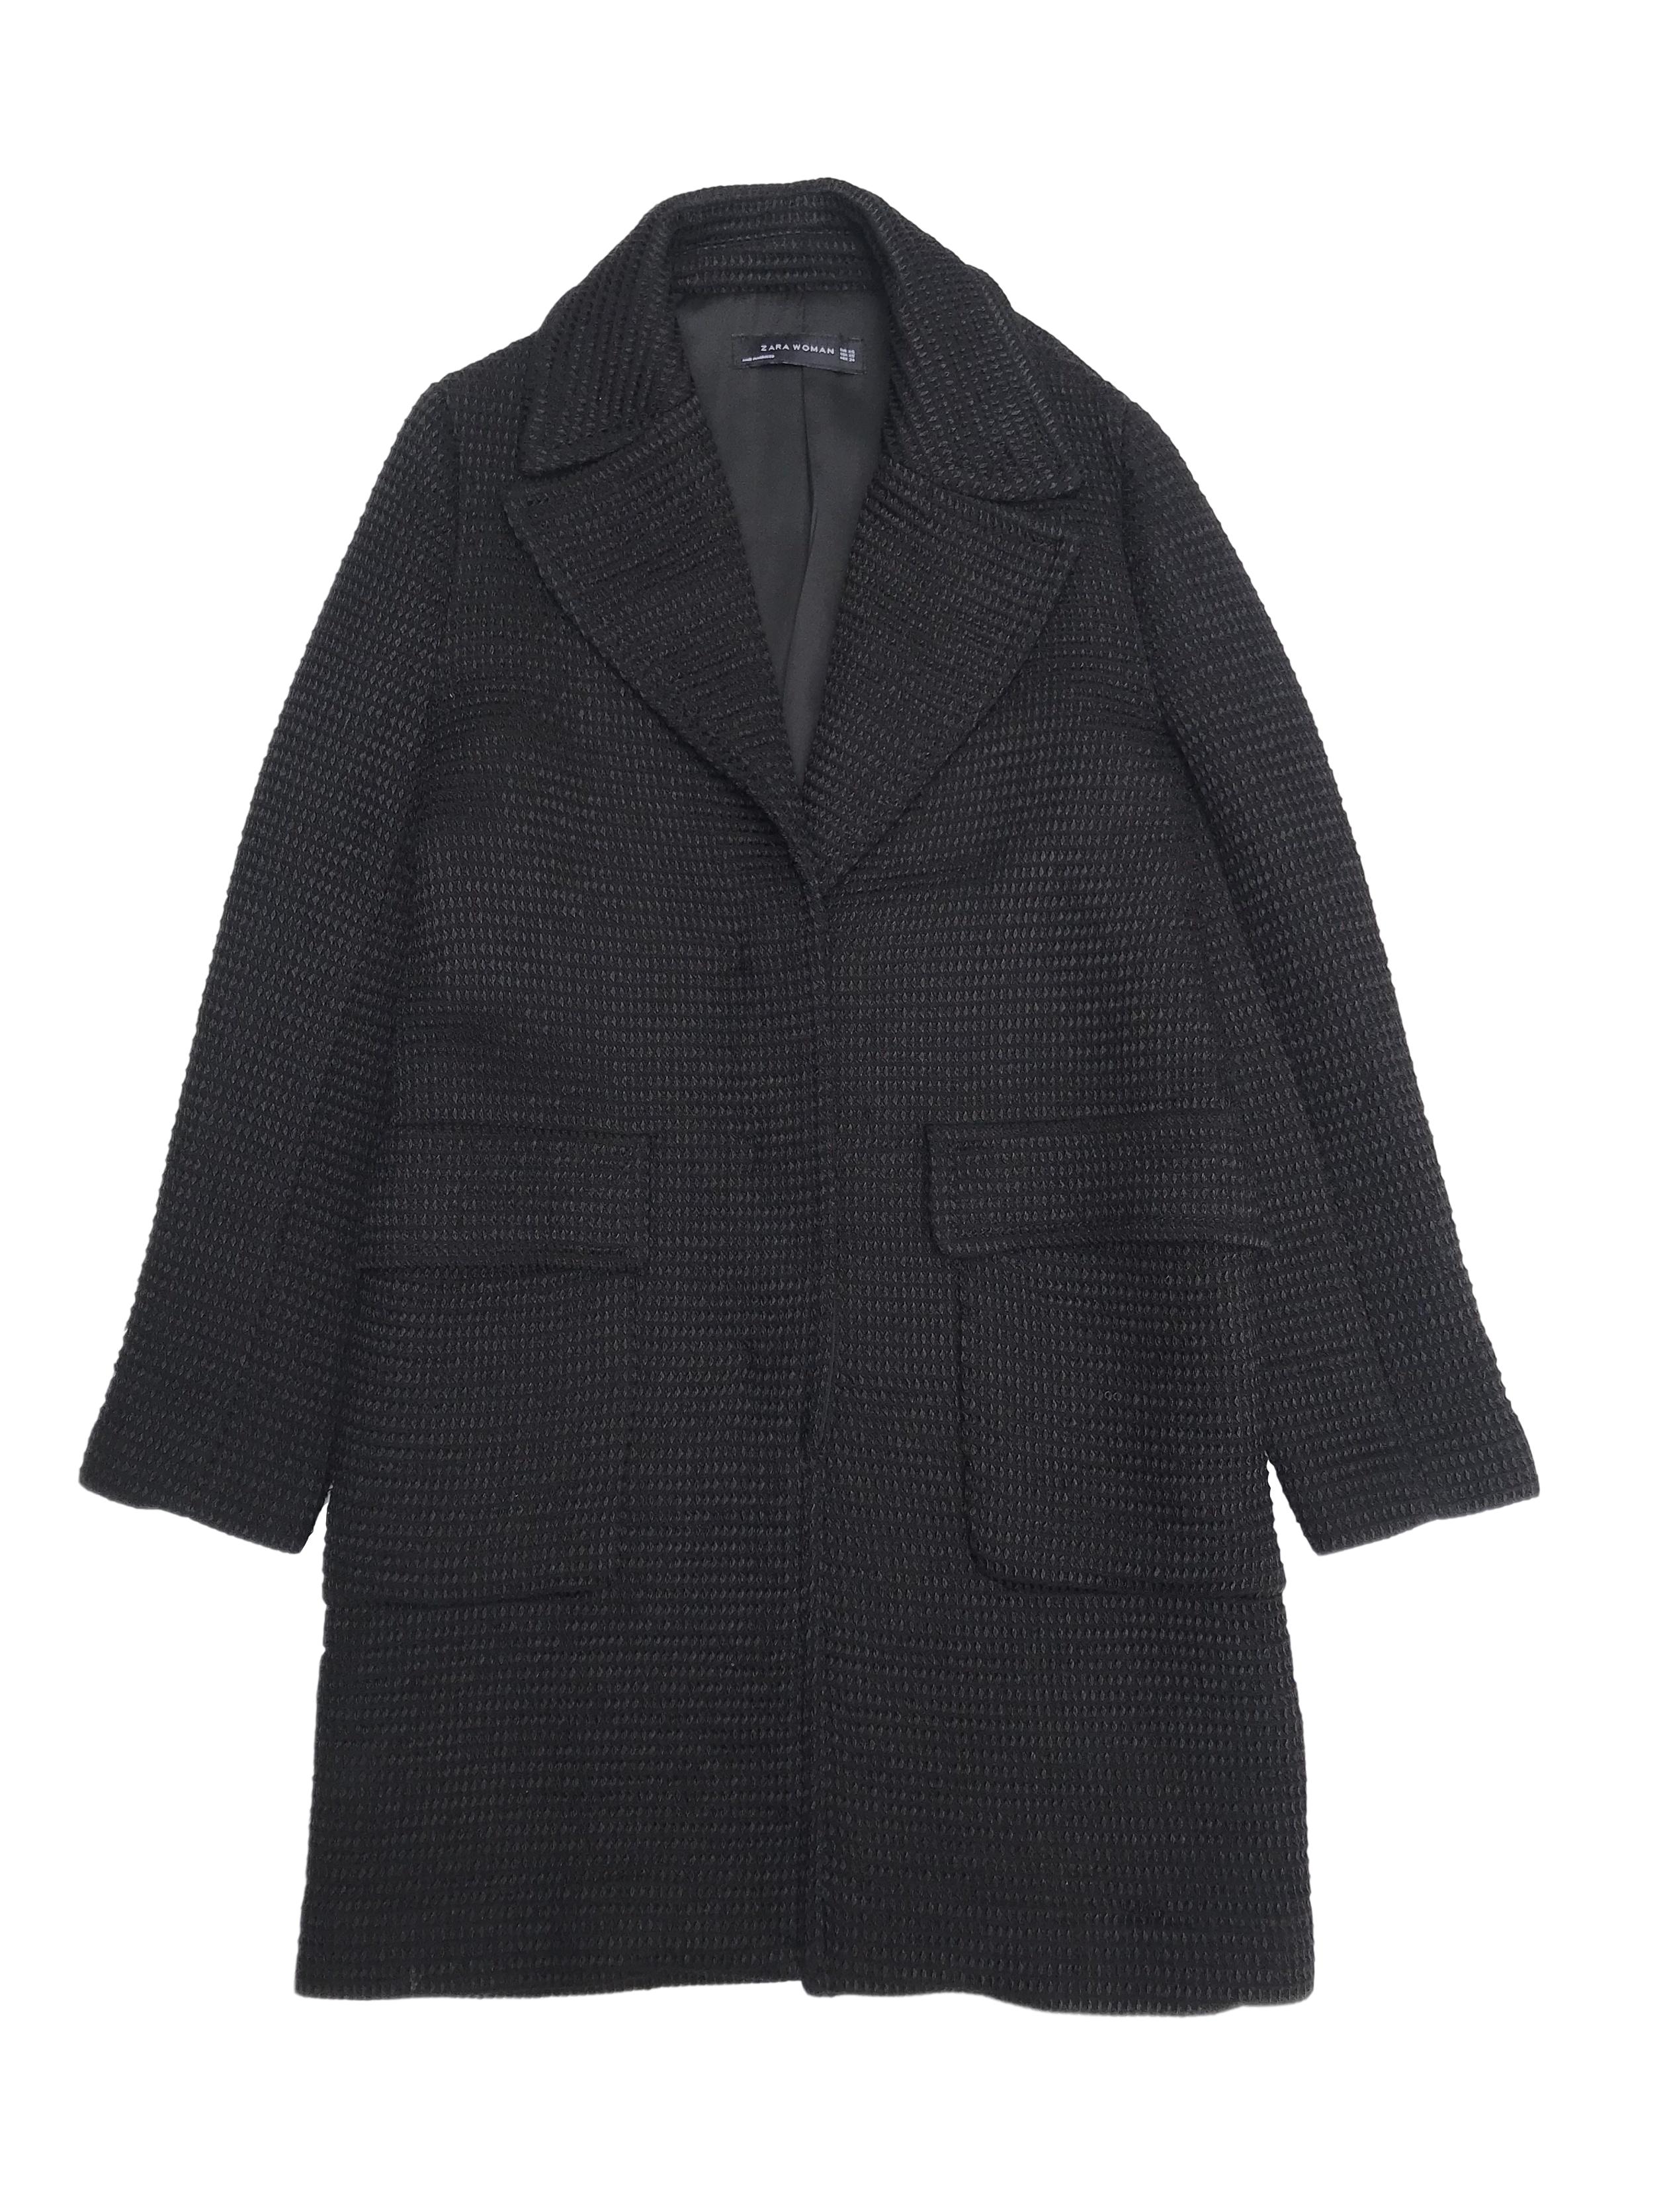 Abrigo Zara negro texturado, forrado, con solapas y bolsillos delanteros. Largo 85cm. Precio original S/ 350